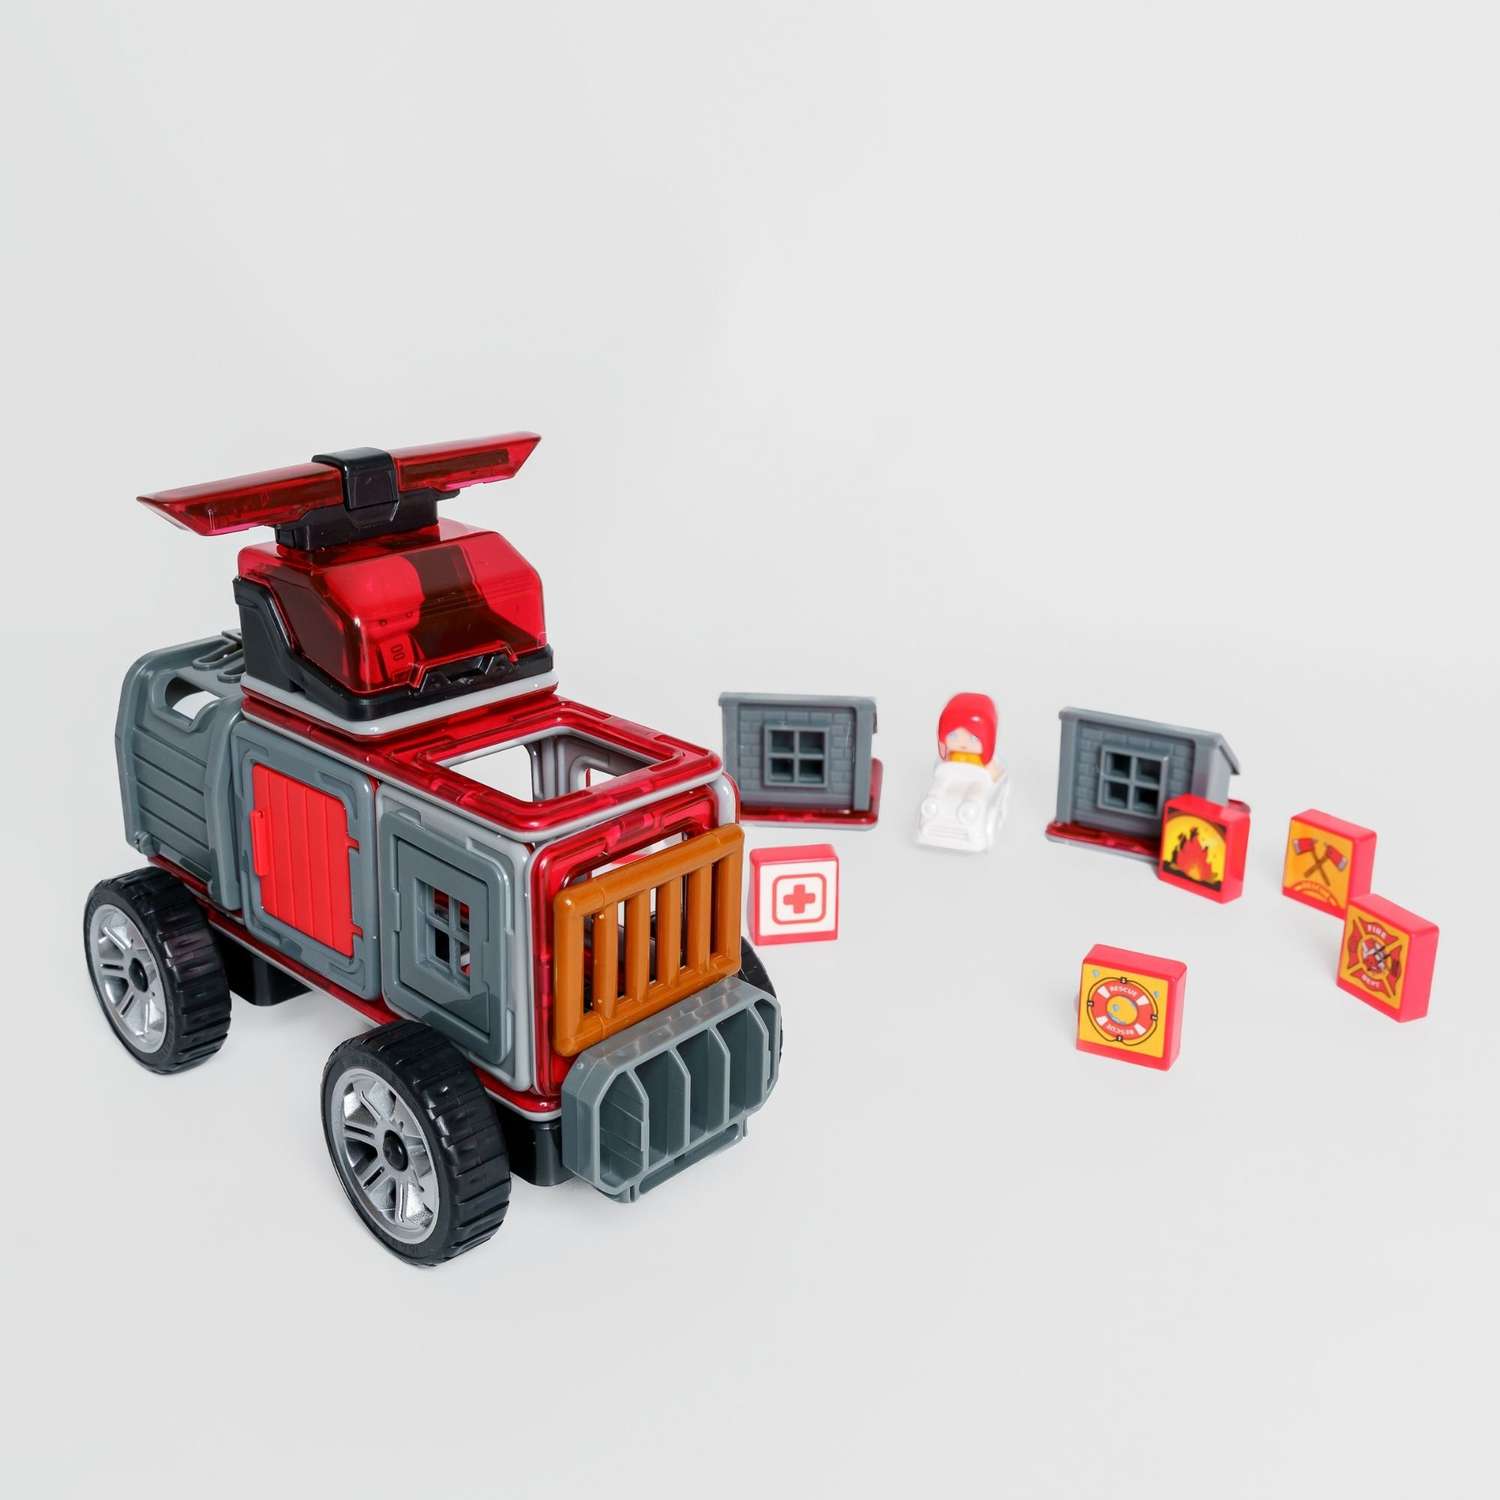 Конструктор Крибли Бу Пожарная машина магнитный сборный. Детская развивающая интересная игрушка 30 элементов - фото 1